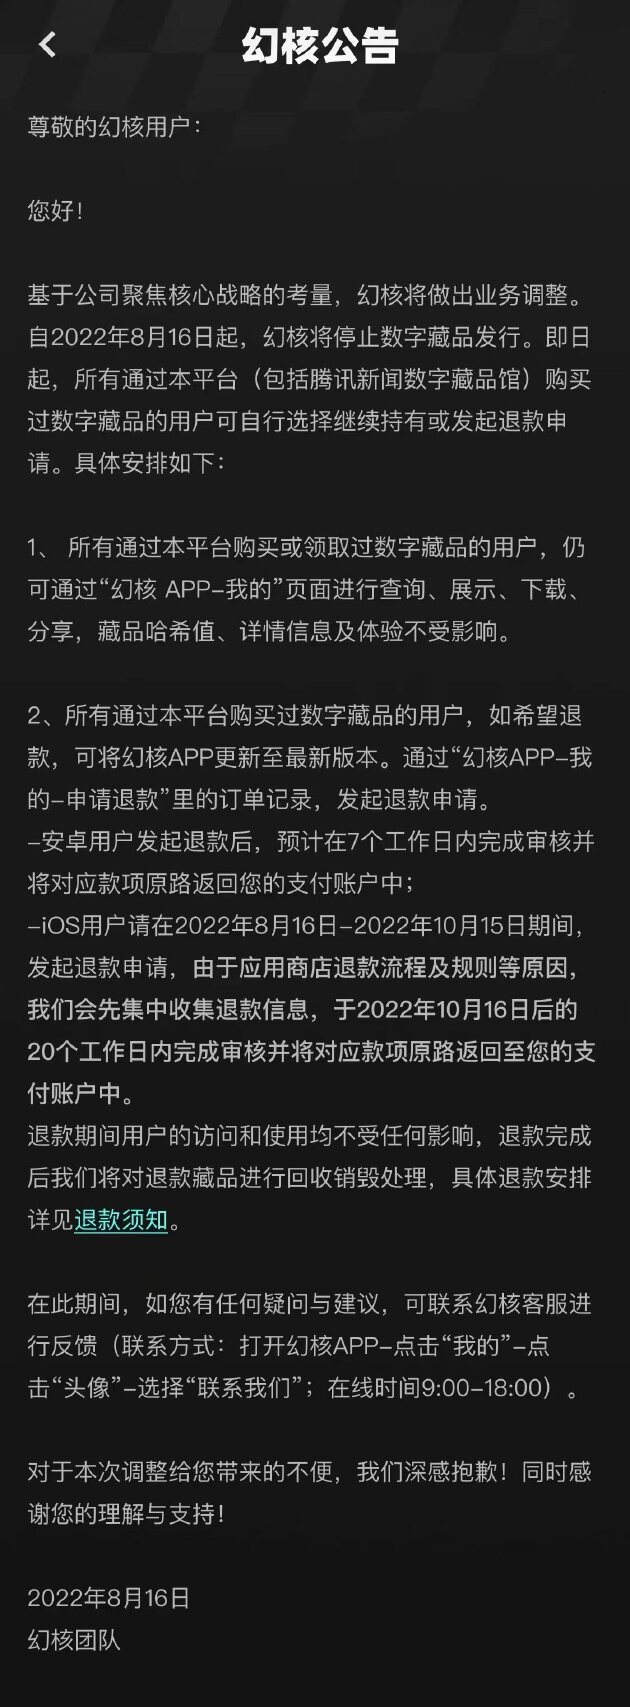 腾讯数字藏品平台幻核宣布停止数藏发行